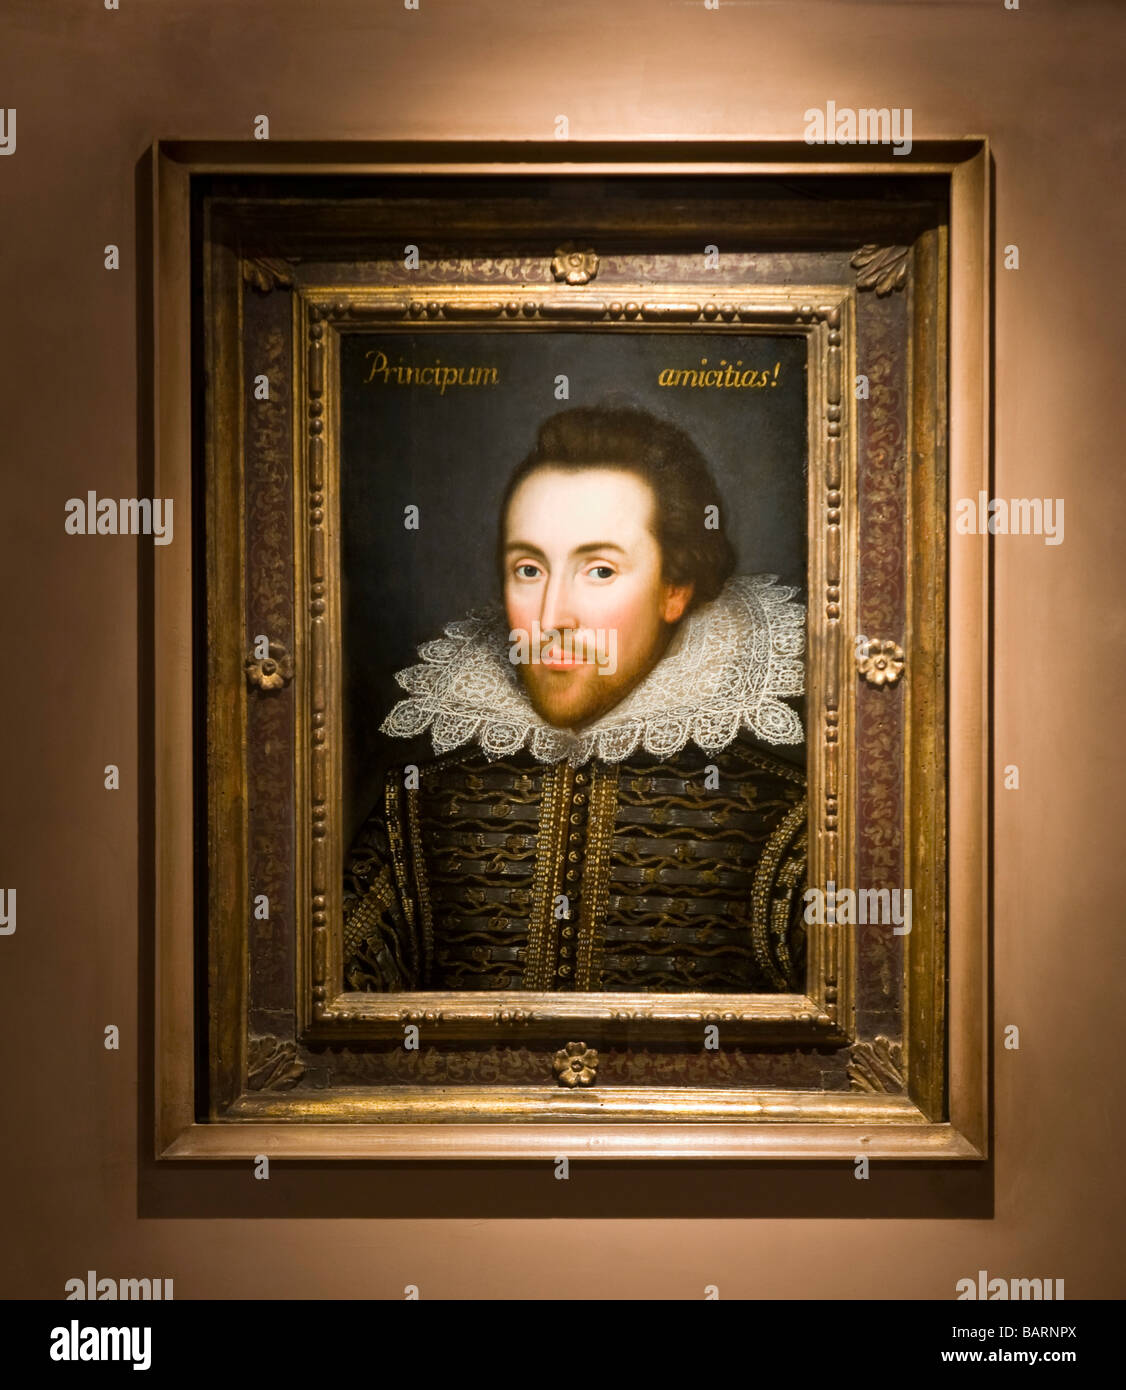 L 'Richard Cobbe' portrait de William Shakespeare dans le 'Shakespeare' exposition à la Shakespeare Birthplace Trust. Banque D'Images